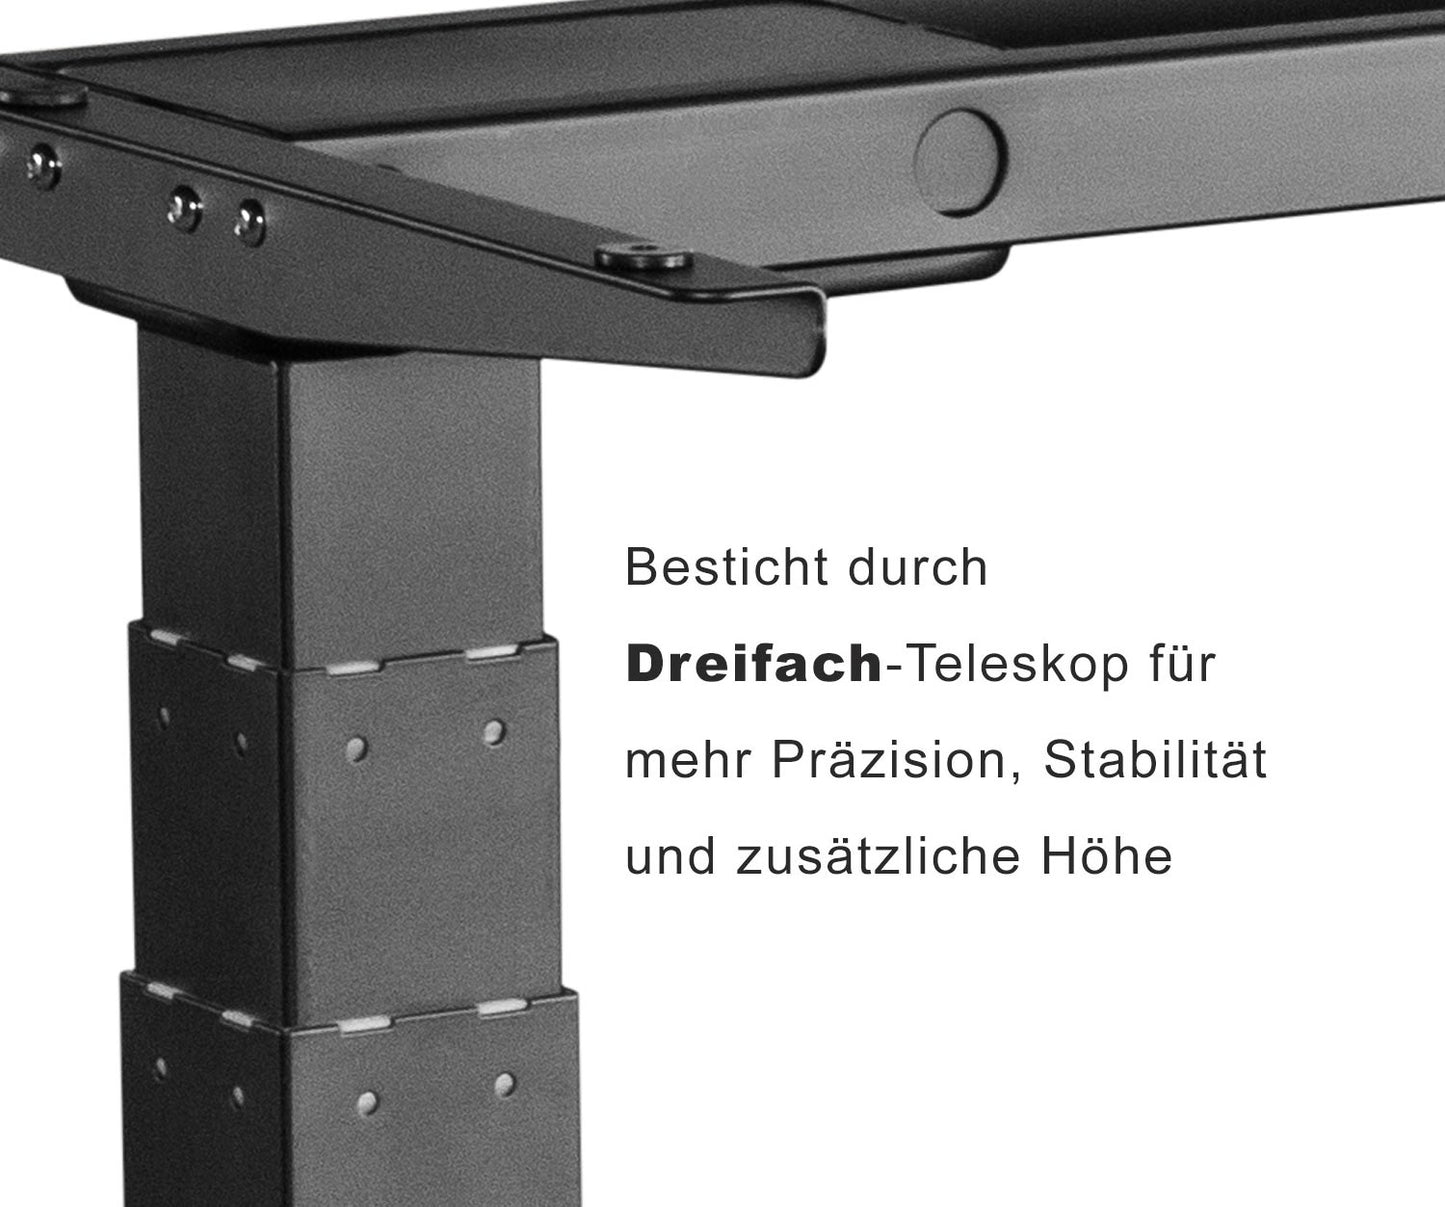 Spar-Bundle ergoSMARTPLUS schwarz + Tischplatte weiss 150x75x2,5cm